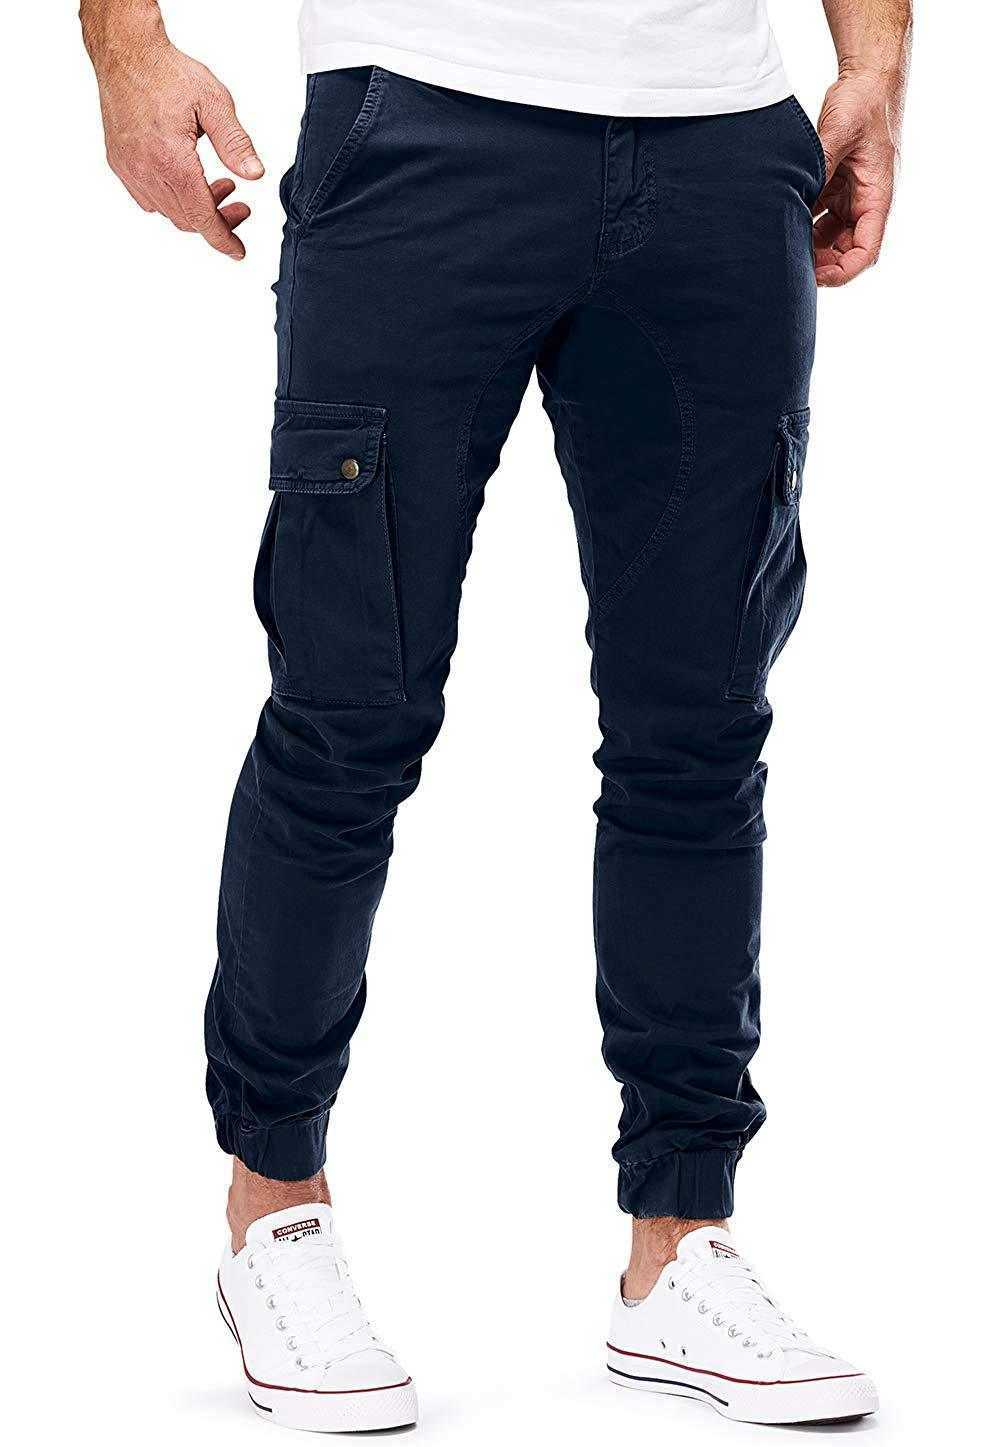 Men's Pants 2022 hommes Streetwear Cargo pantalon mode pantalons de survêtement Joggers pantalon décontracté homme couleur unie coton pantalon hommes marque pantalon de survêtement W0325